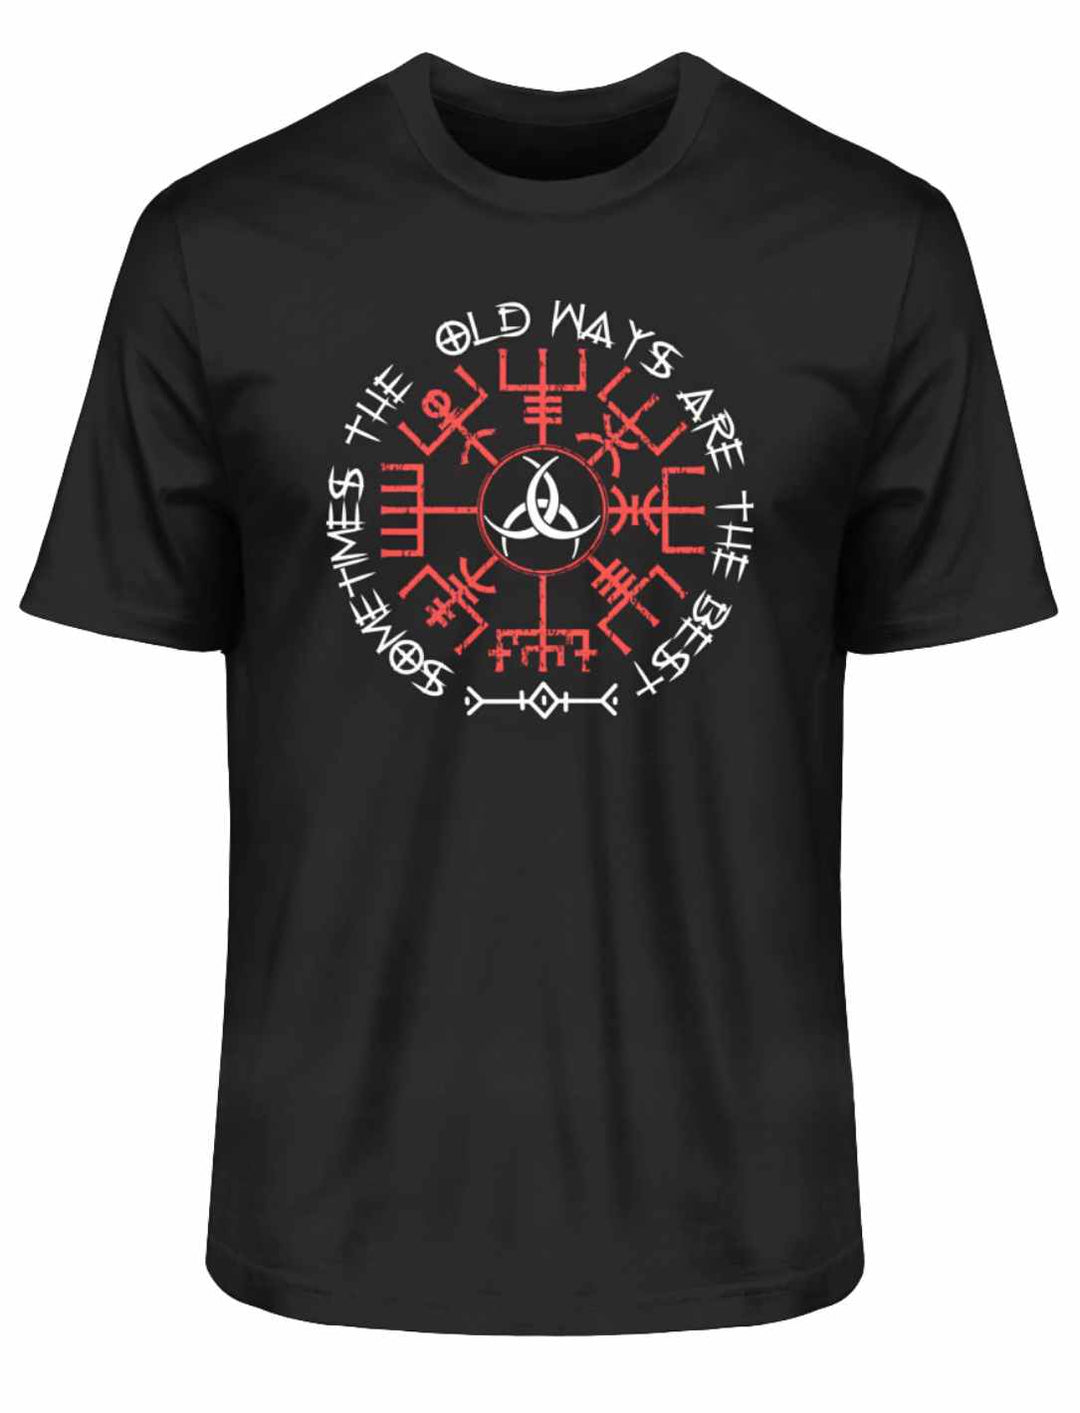 Schwarzes "Sometimes the Old Ways"-T-Shirt mit kraftvollen nordischen und keltischen Symbolen Vegvisir und Triquetra, die altes Wissen und Schutz repräsentieren.